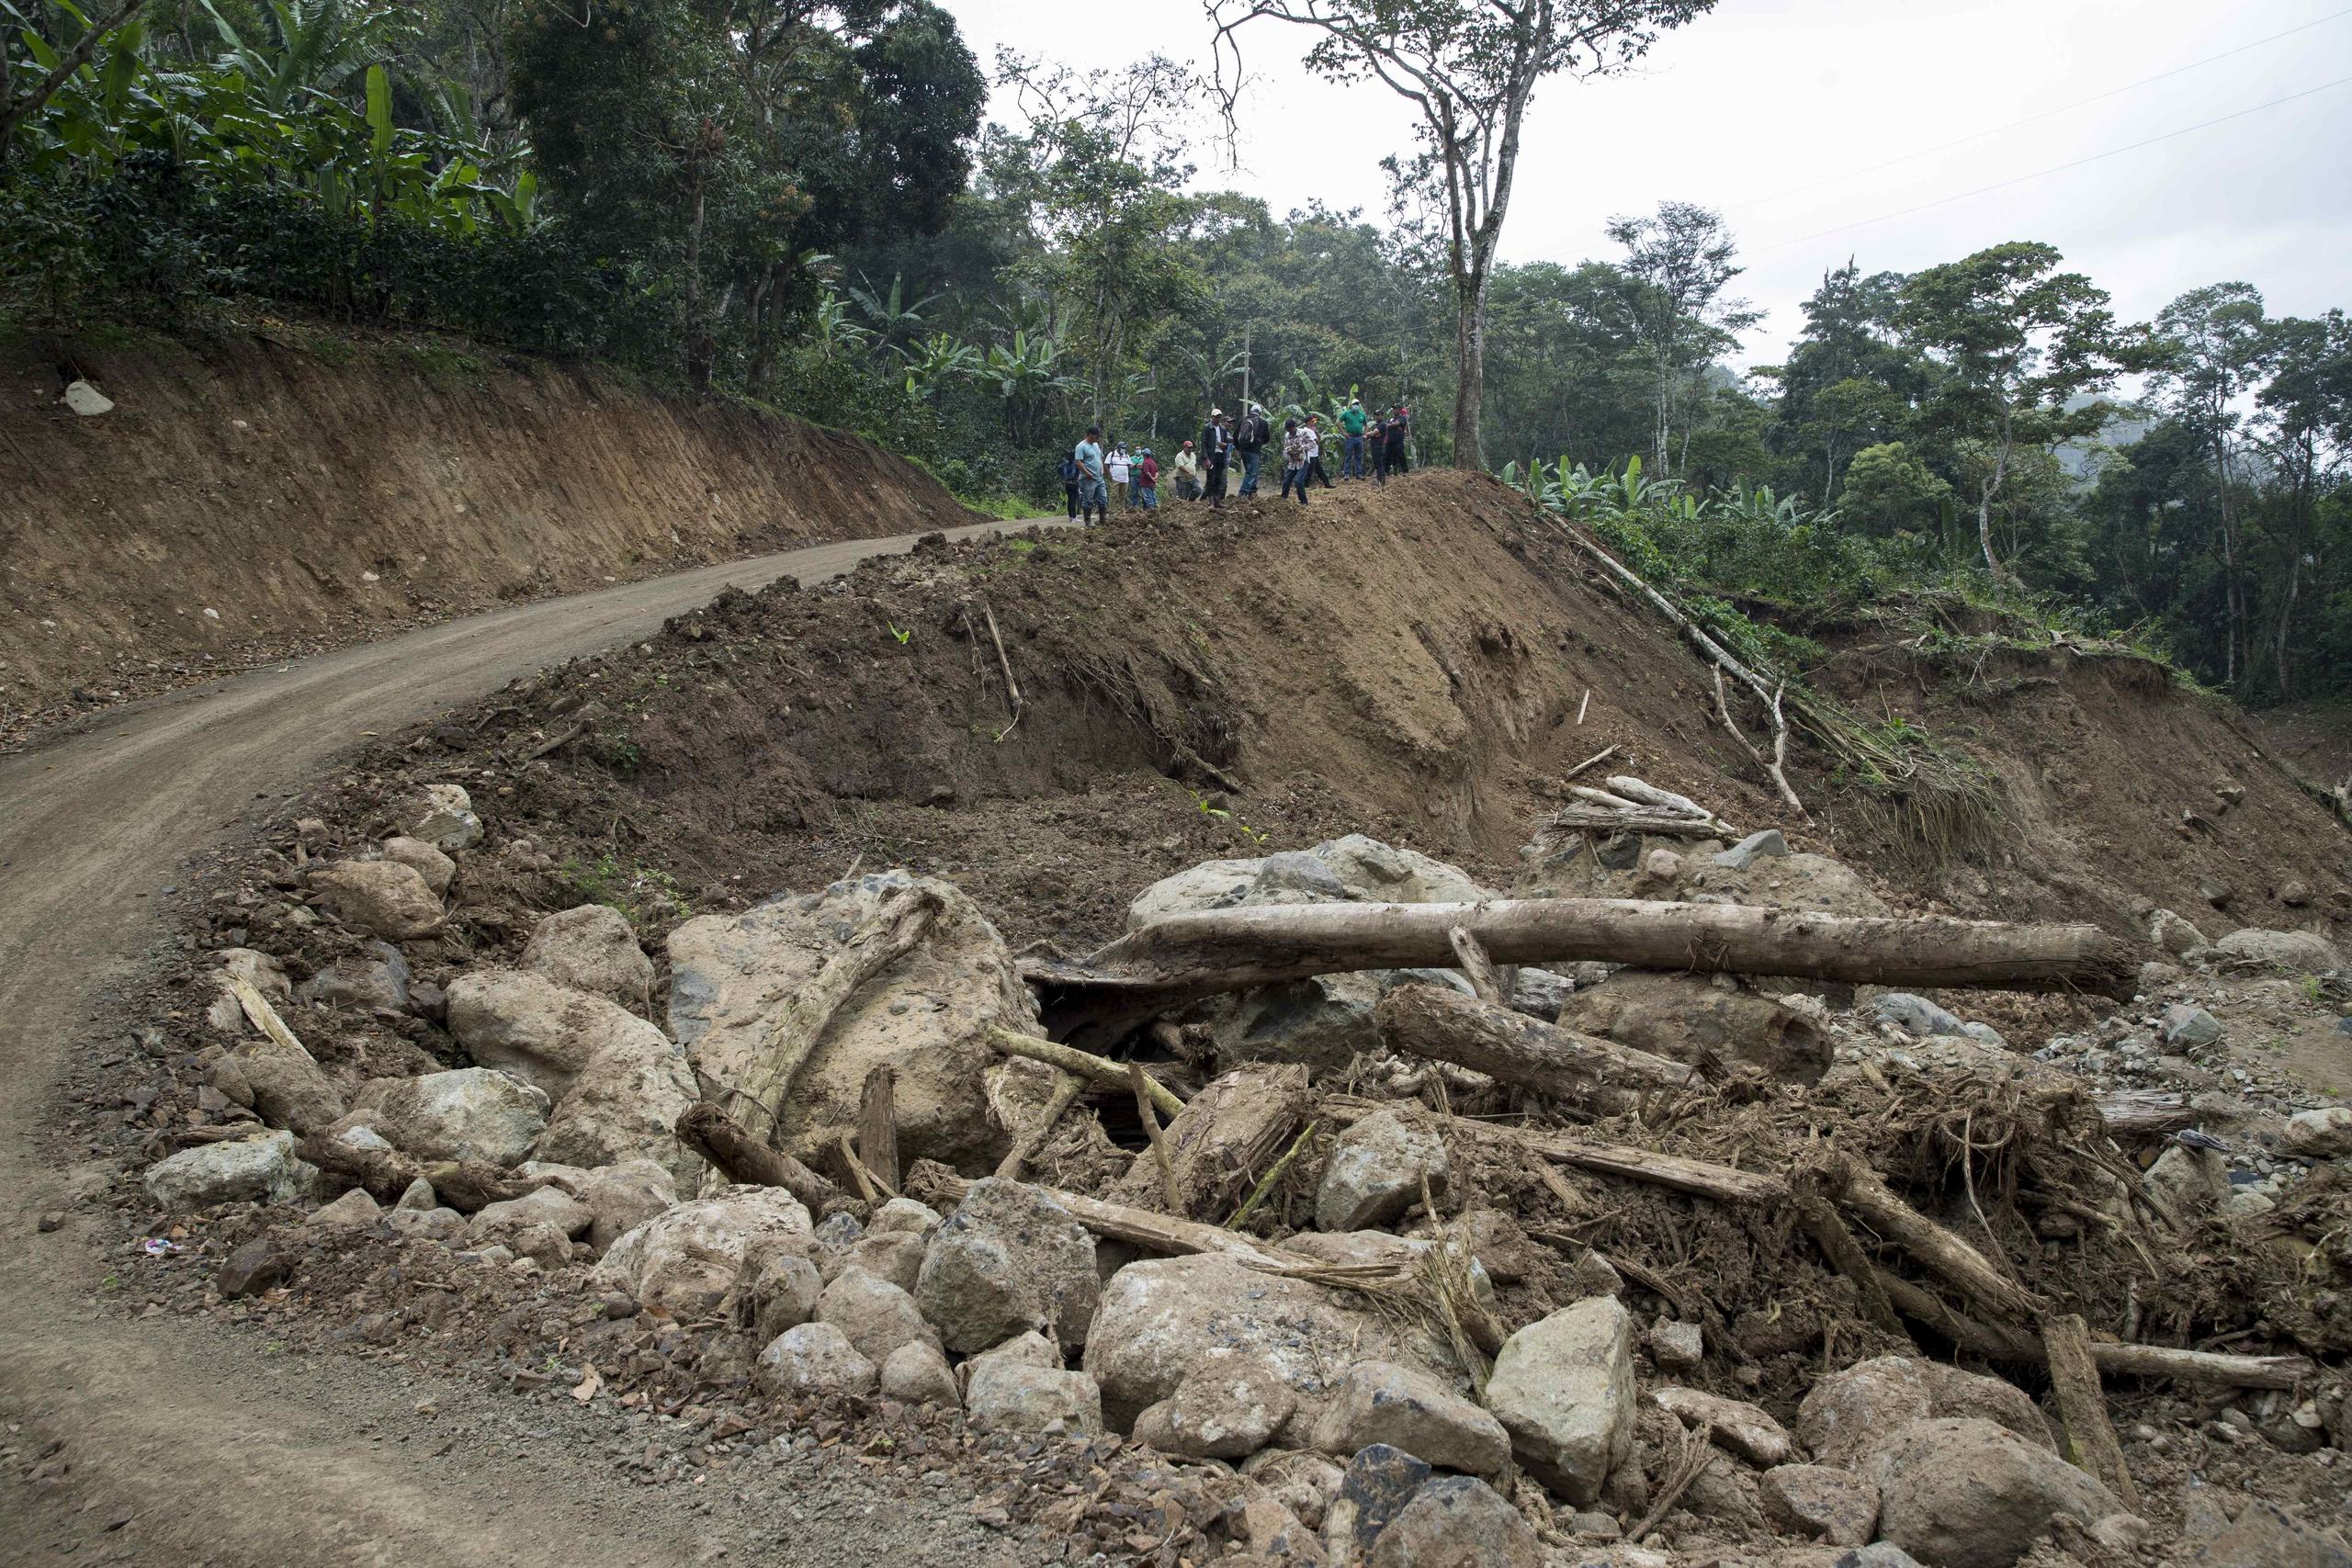 Campesinos trabajan en la reconstrucción de un camino destruido tras el paso del huracán Iota, el 11 de febrero de 2021 en el municipio de Wiwilí, departamento de Jinotega (Nicaragua).